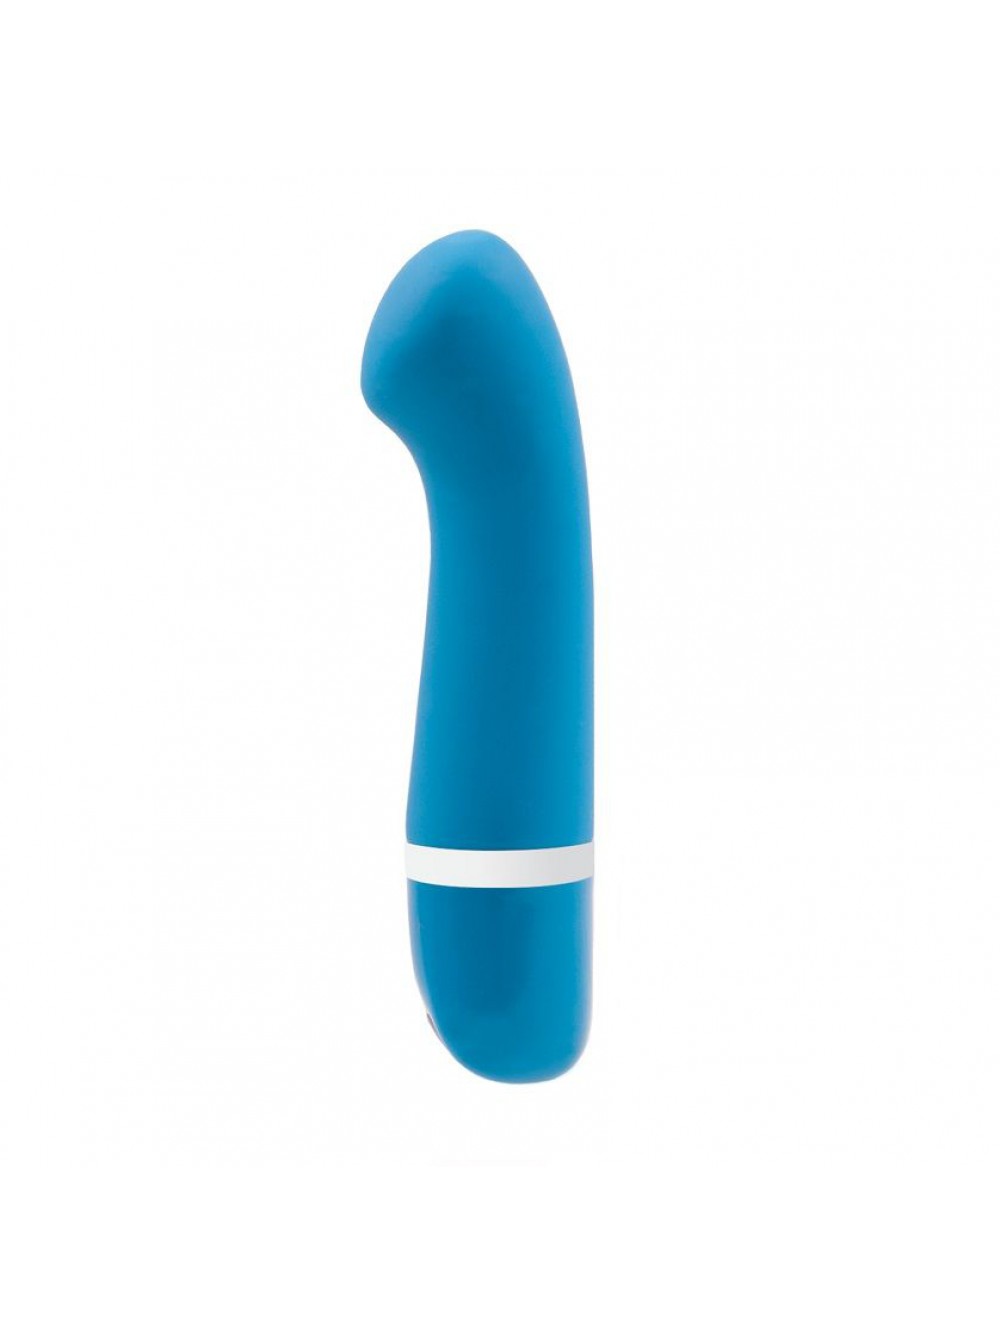 Bswish BDesired Deluxe Vibrazione 12.7 cm x 3.1 cm Azul (Curve Blue Lagoon)